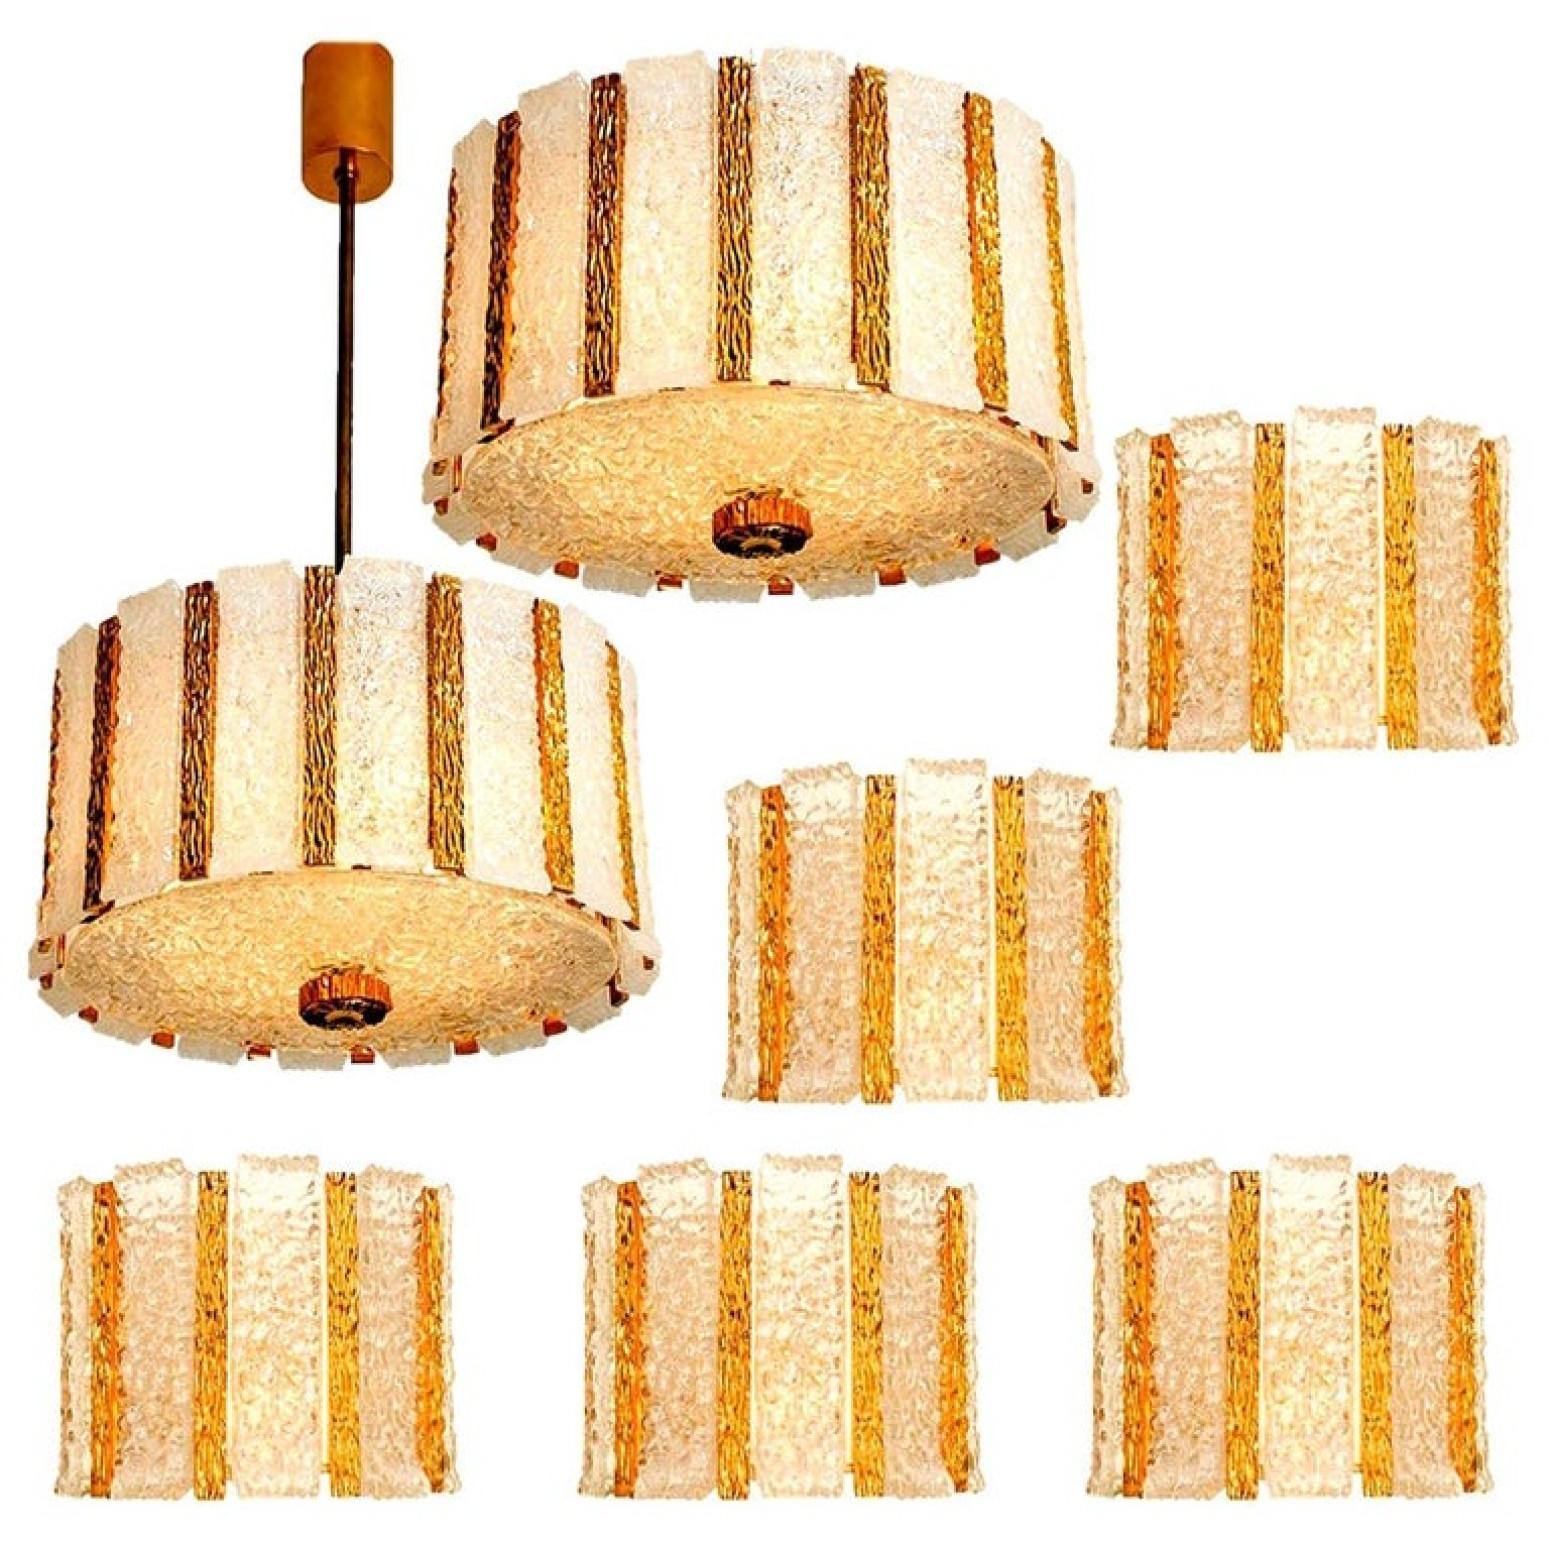 Ensemble de luminaires à tambour en bronze doré avec plusieurs panneaux de verre. Le meilleur du design des années 1960. Cet ensemble est exécuté à un niveau très élevé. Il est rare d'en trouver un ensemble.

Le style élégant de cet ensemble